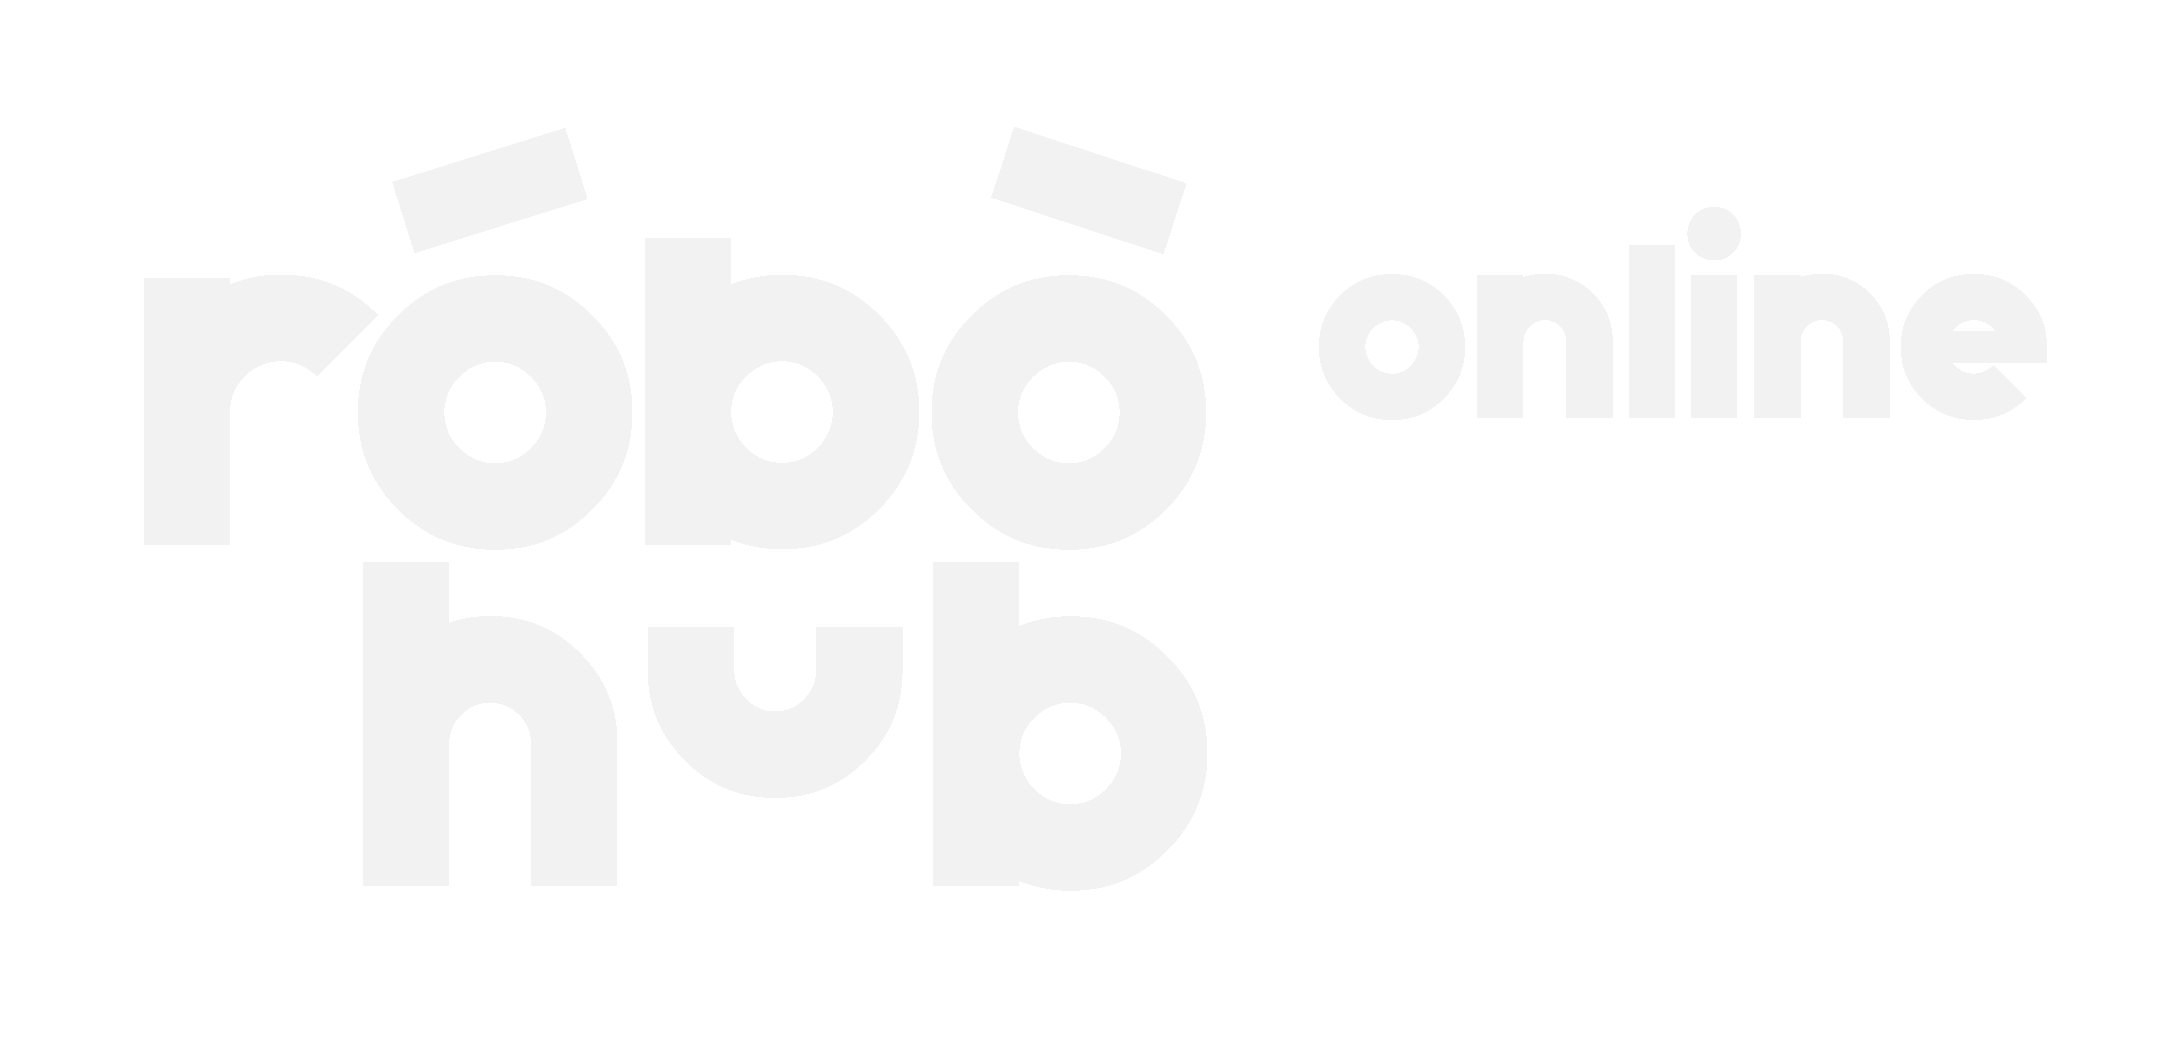 RoboHub